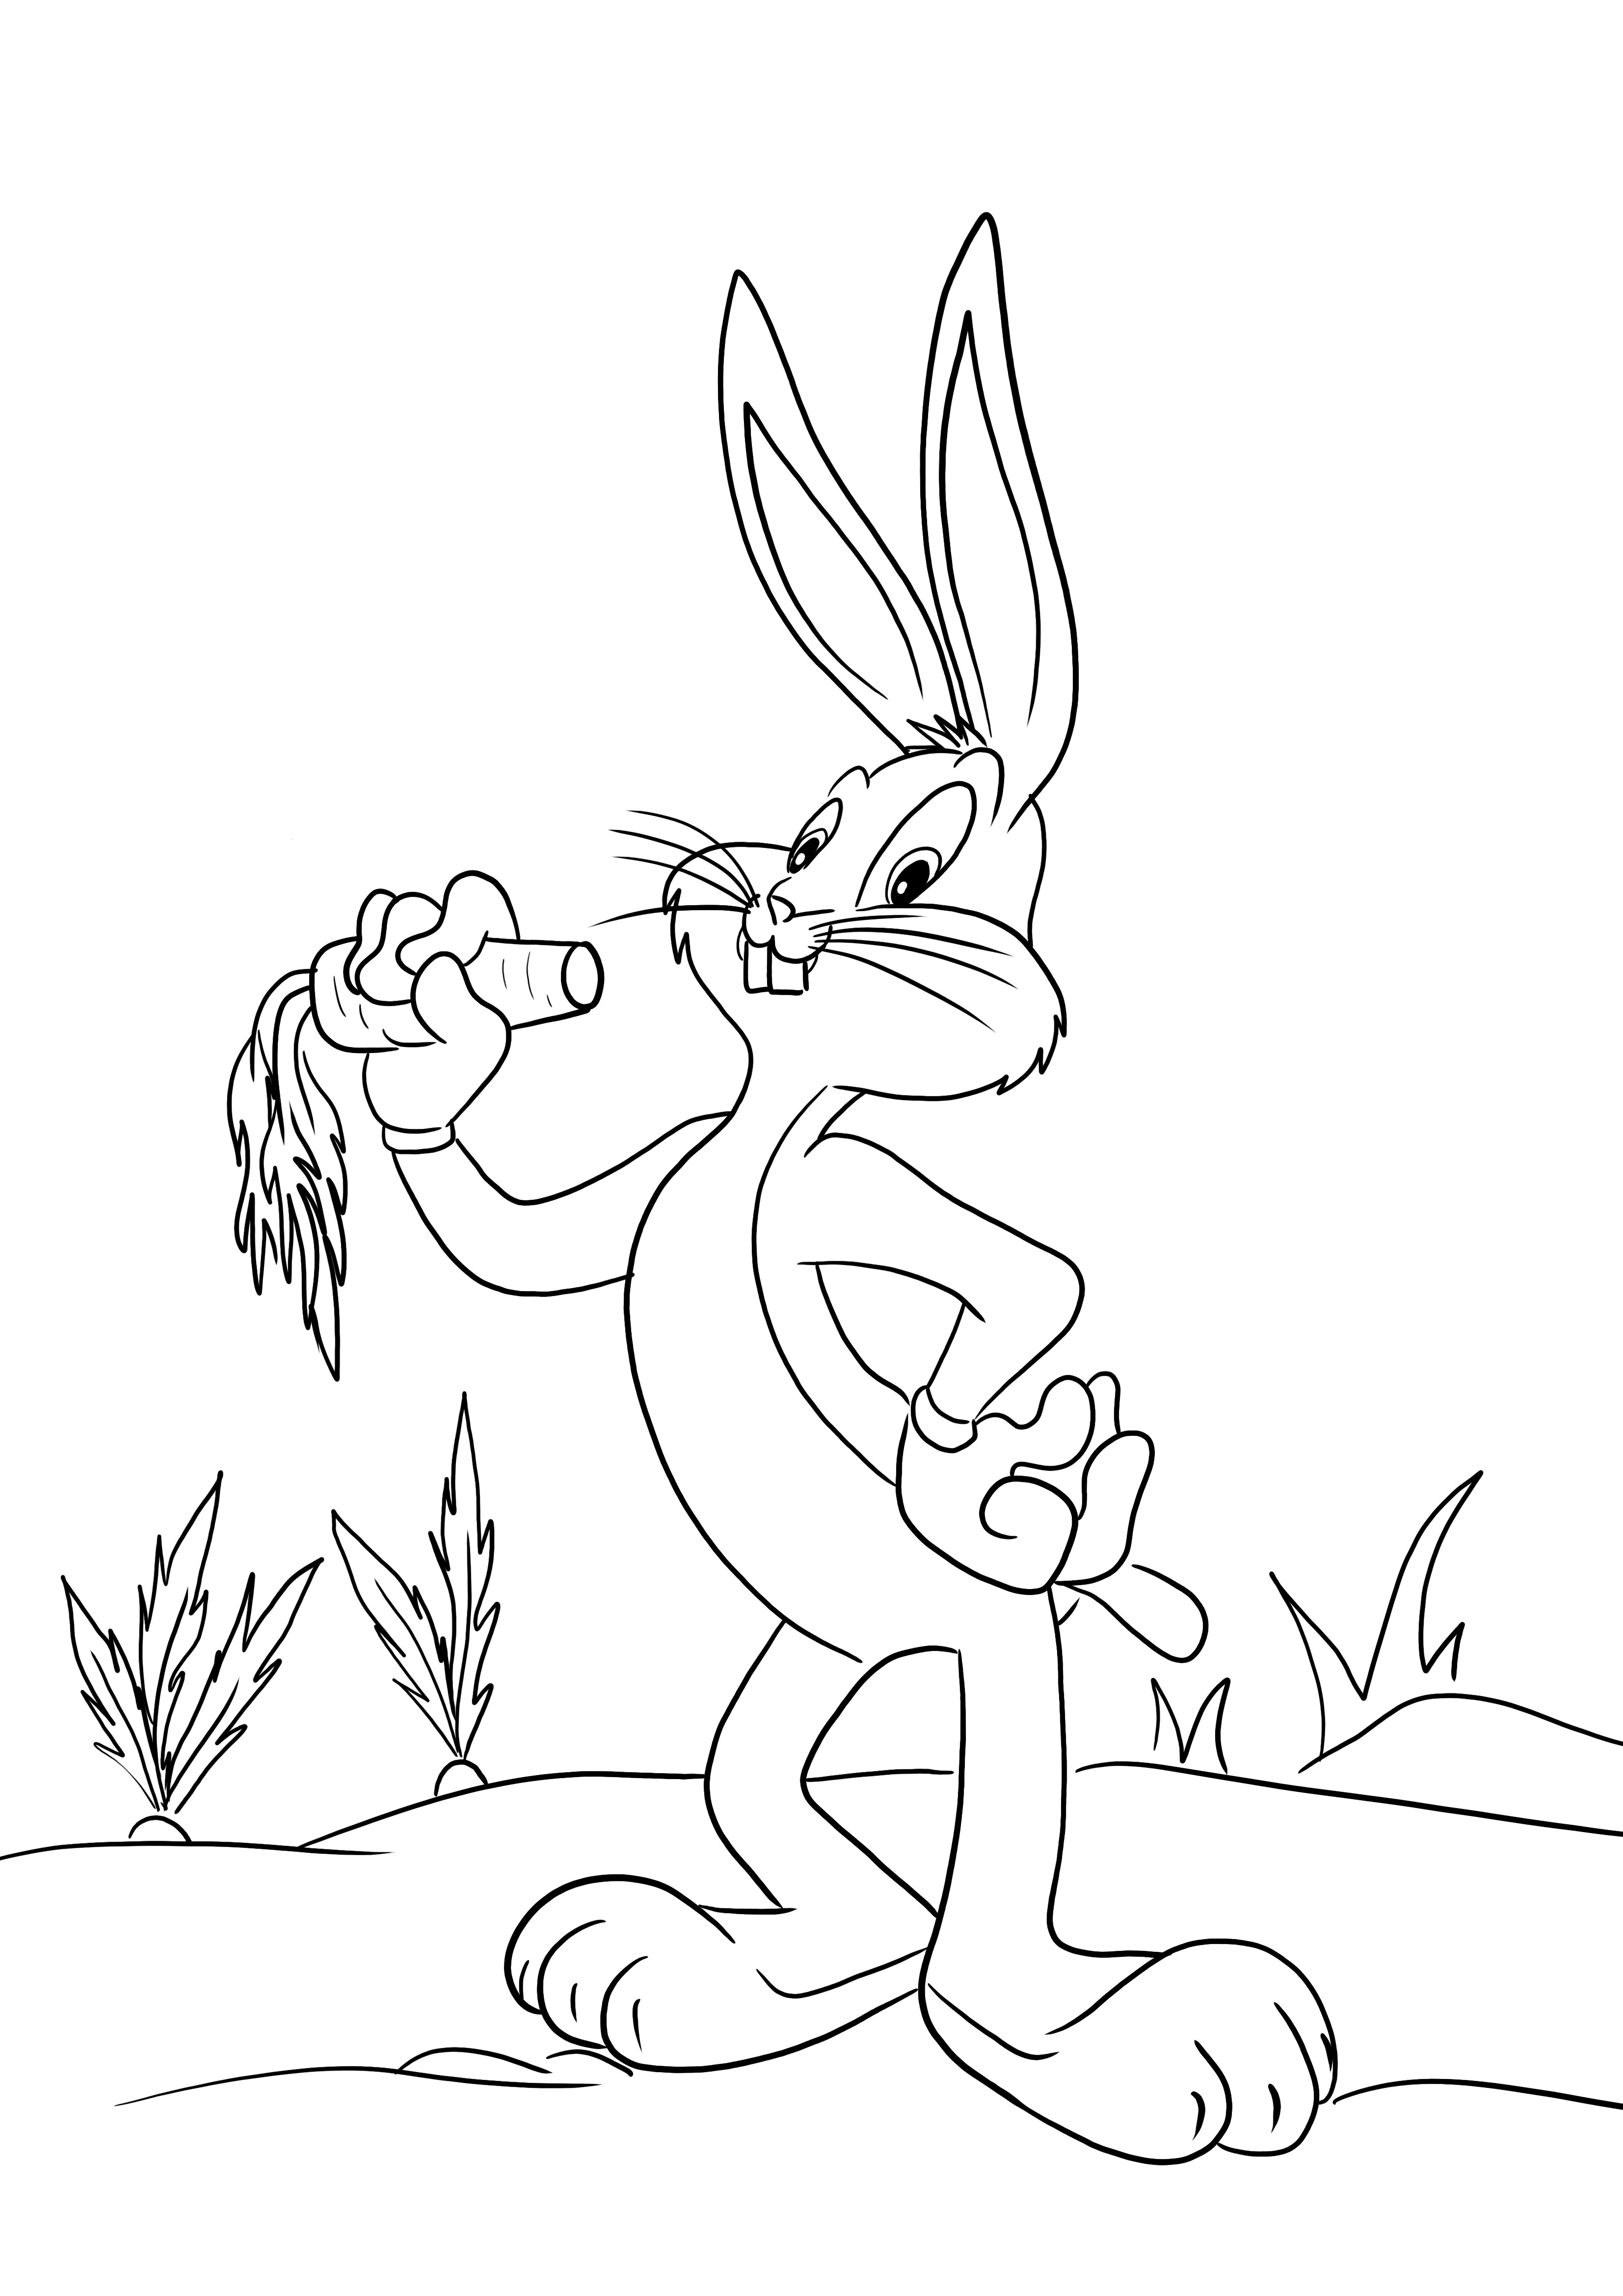 Helppo värityskuva Bugs Bunnysta lapsille väritettäväksi ja hauskanpitoon